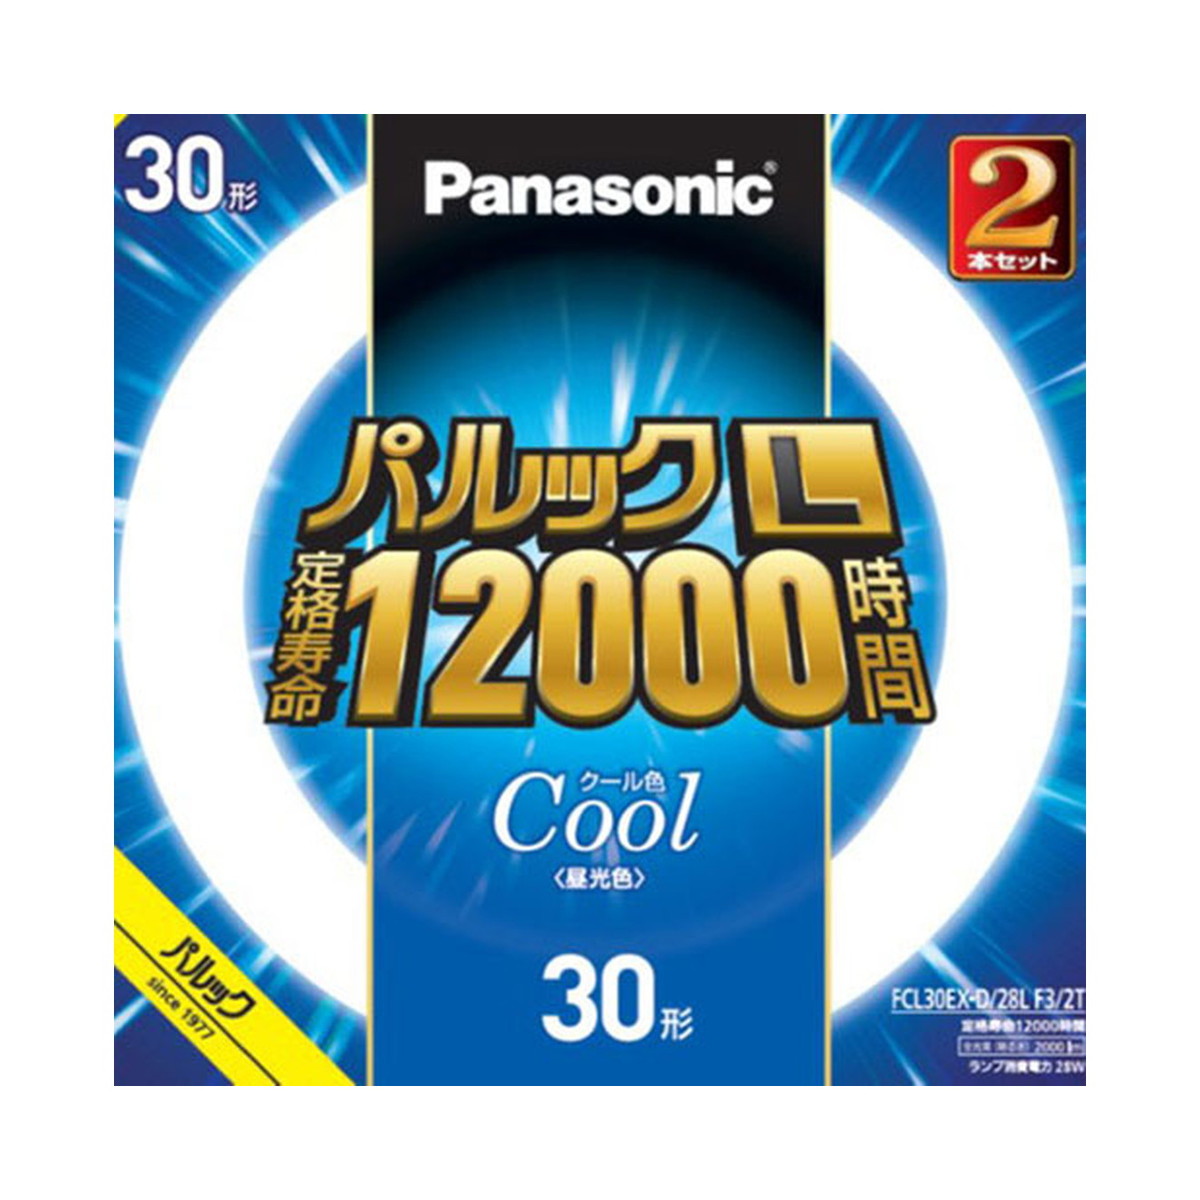 パナソニック Panasonic FCL30EXD28LF32T パルック L 蛍光灯  30形 クール色 2本セット